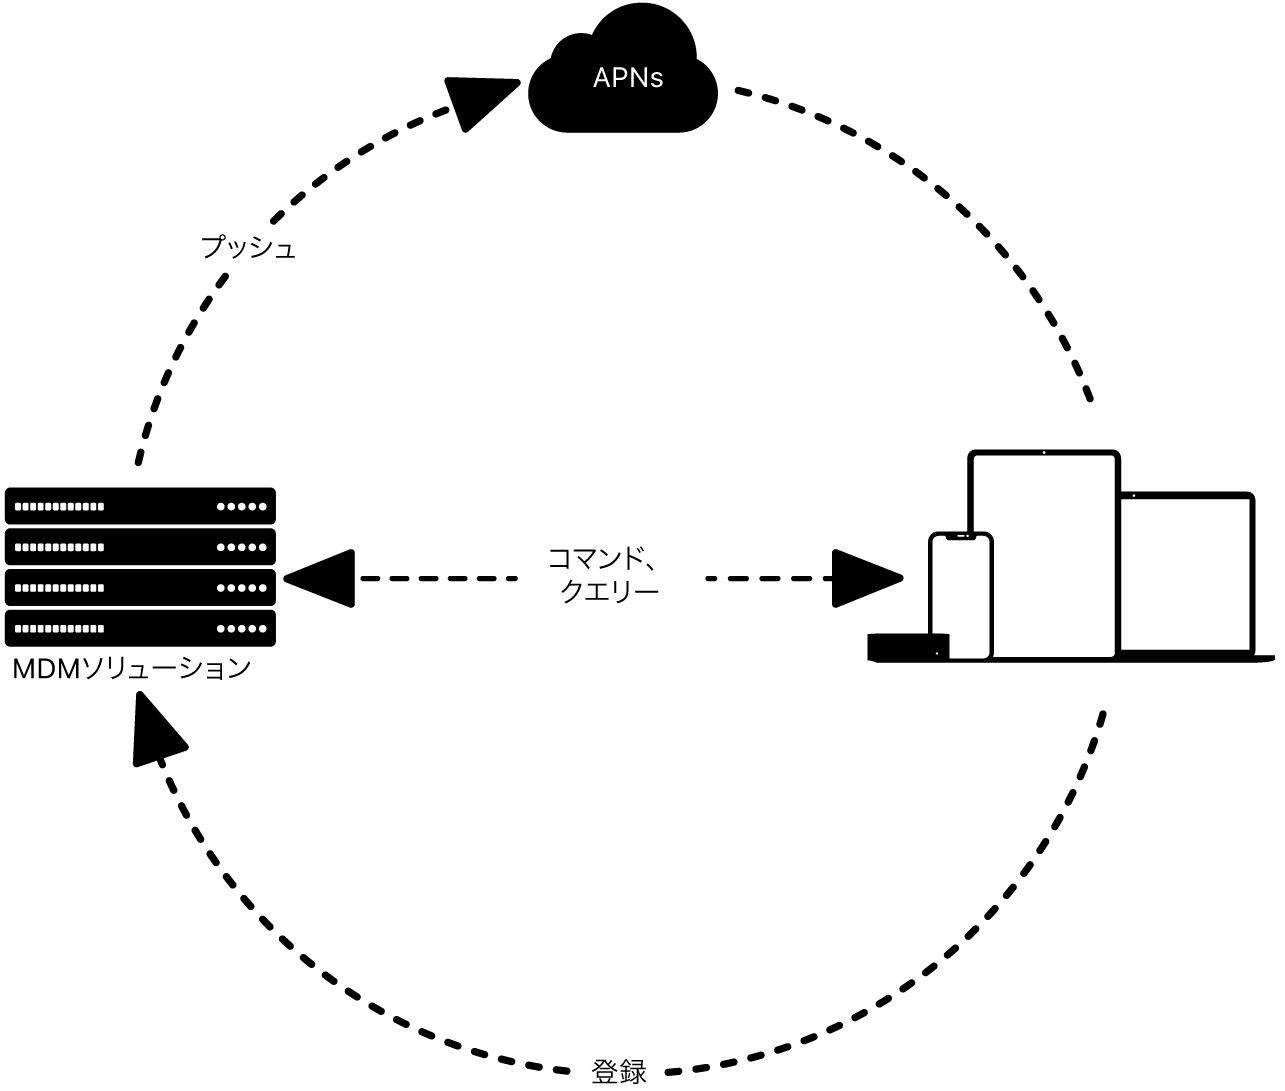 MDMソリューションでAPNがどのように使用されるかを示す図。